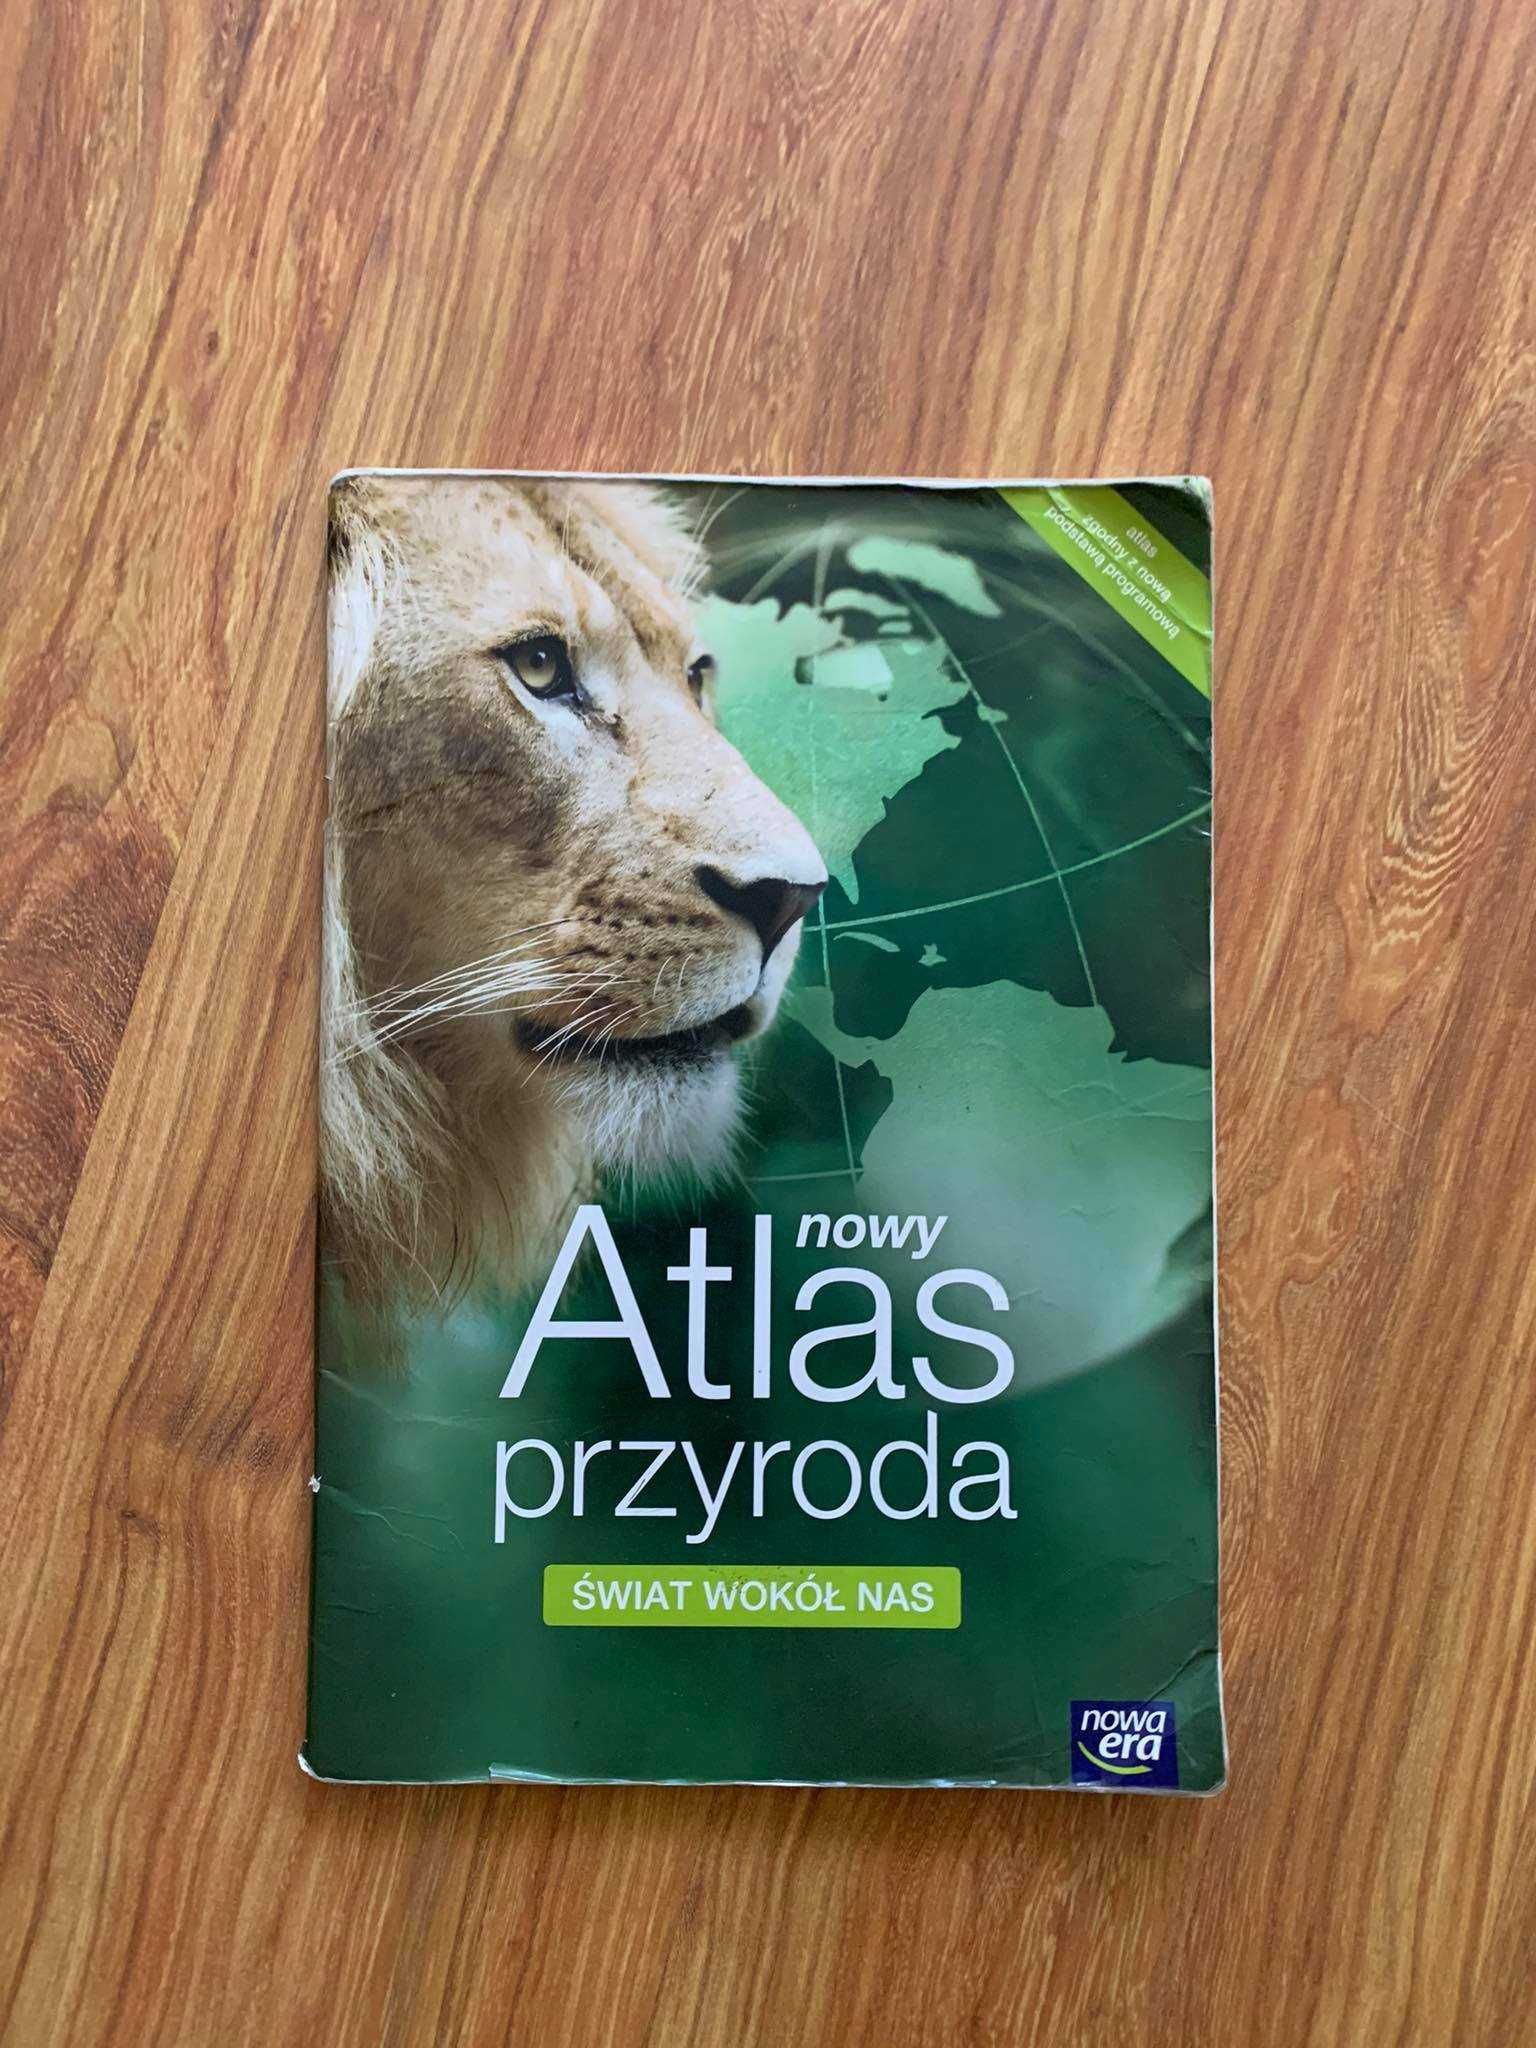 Atlas przyroda -Świat wokół nas